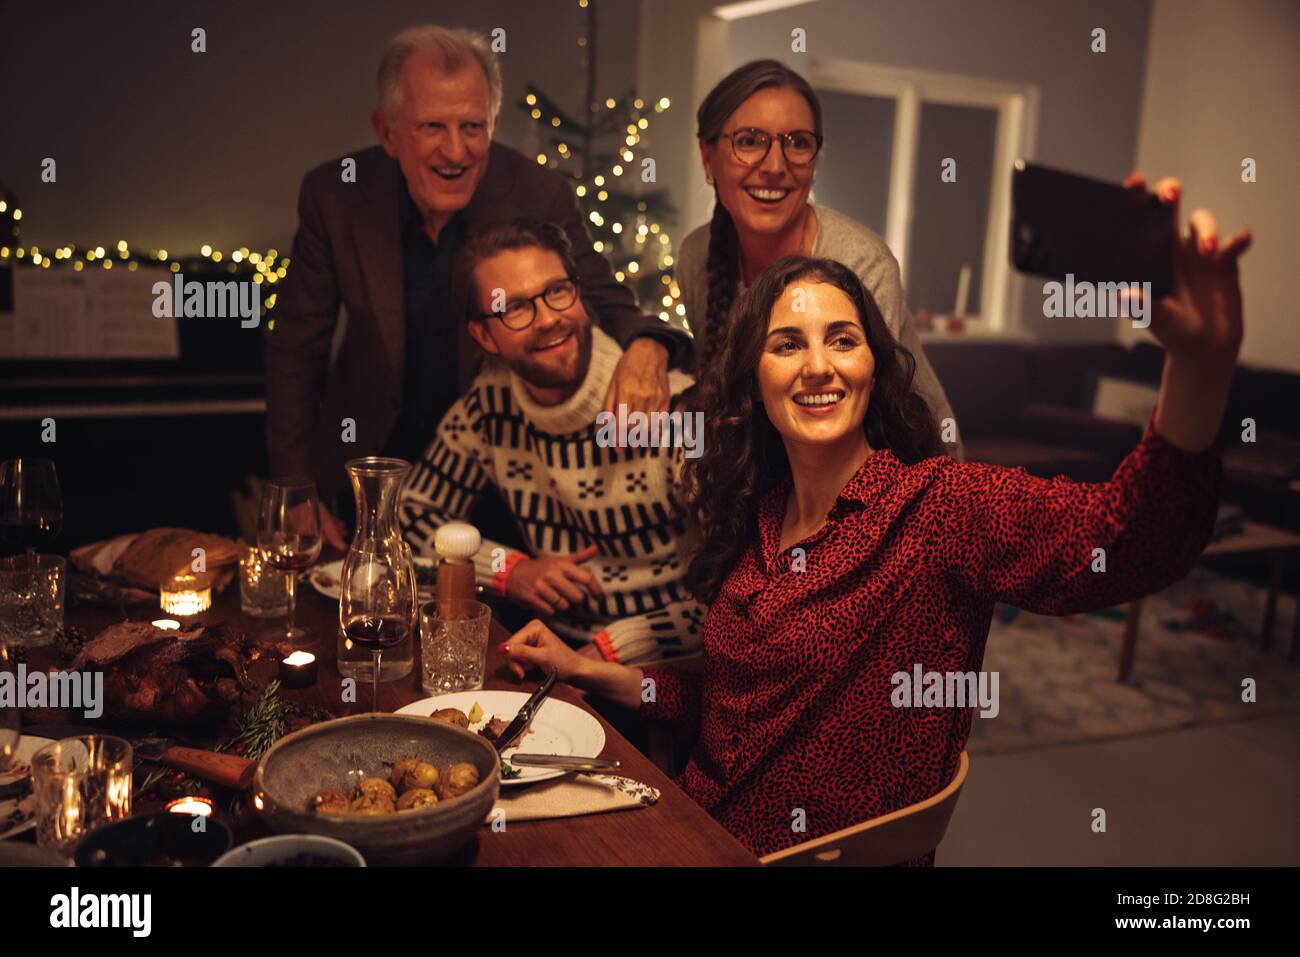 Frau, die am heiligabend Selfie mit der Familie gemacht hat. Europäische Familie nimmt Selfie während Weihnachtsessen.; Stockfoto